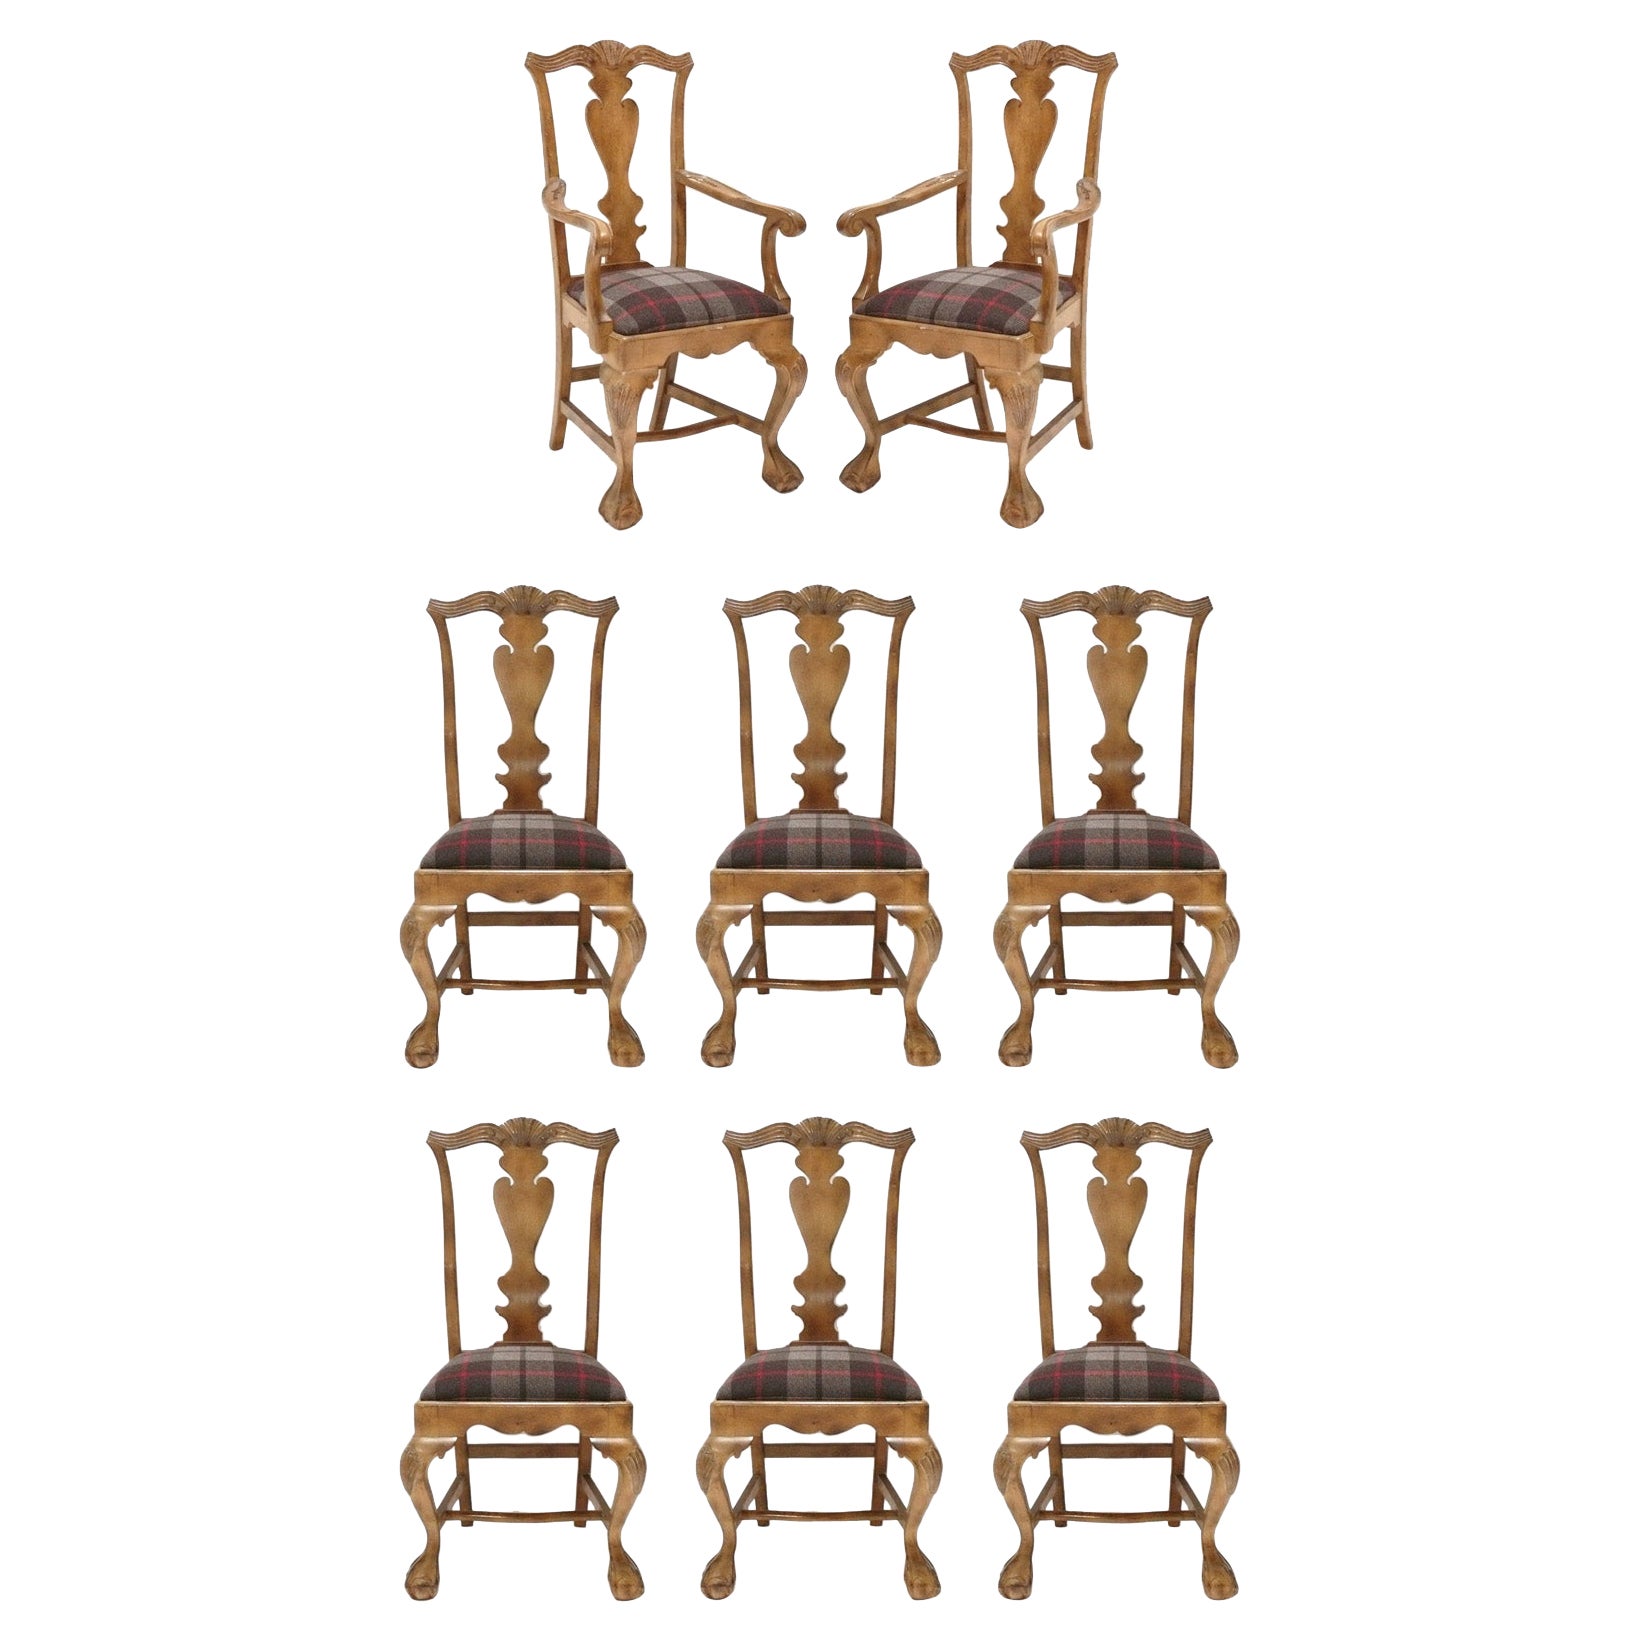 Ensemble de huit chaises de salle à manger françaises achetées chez Ralph Lauren